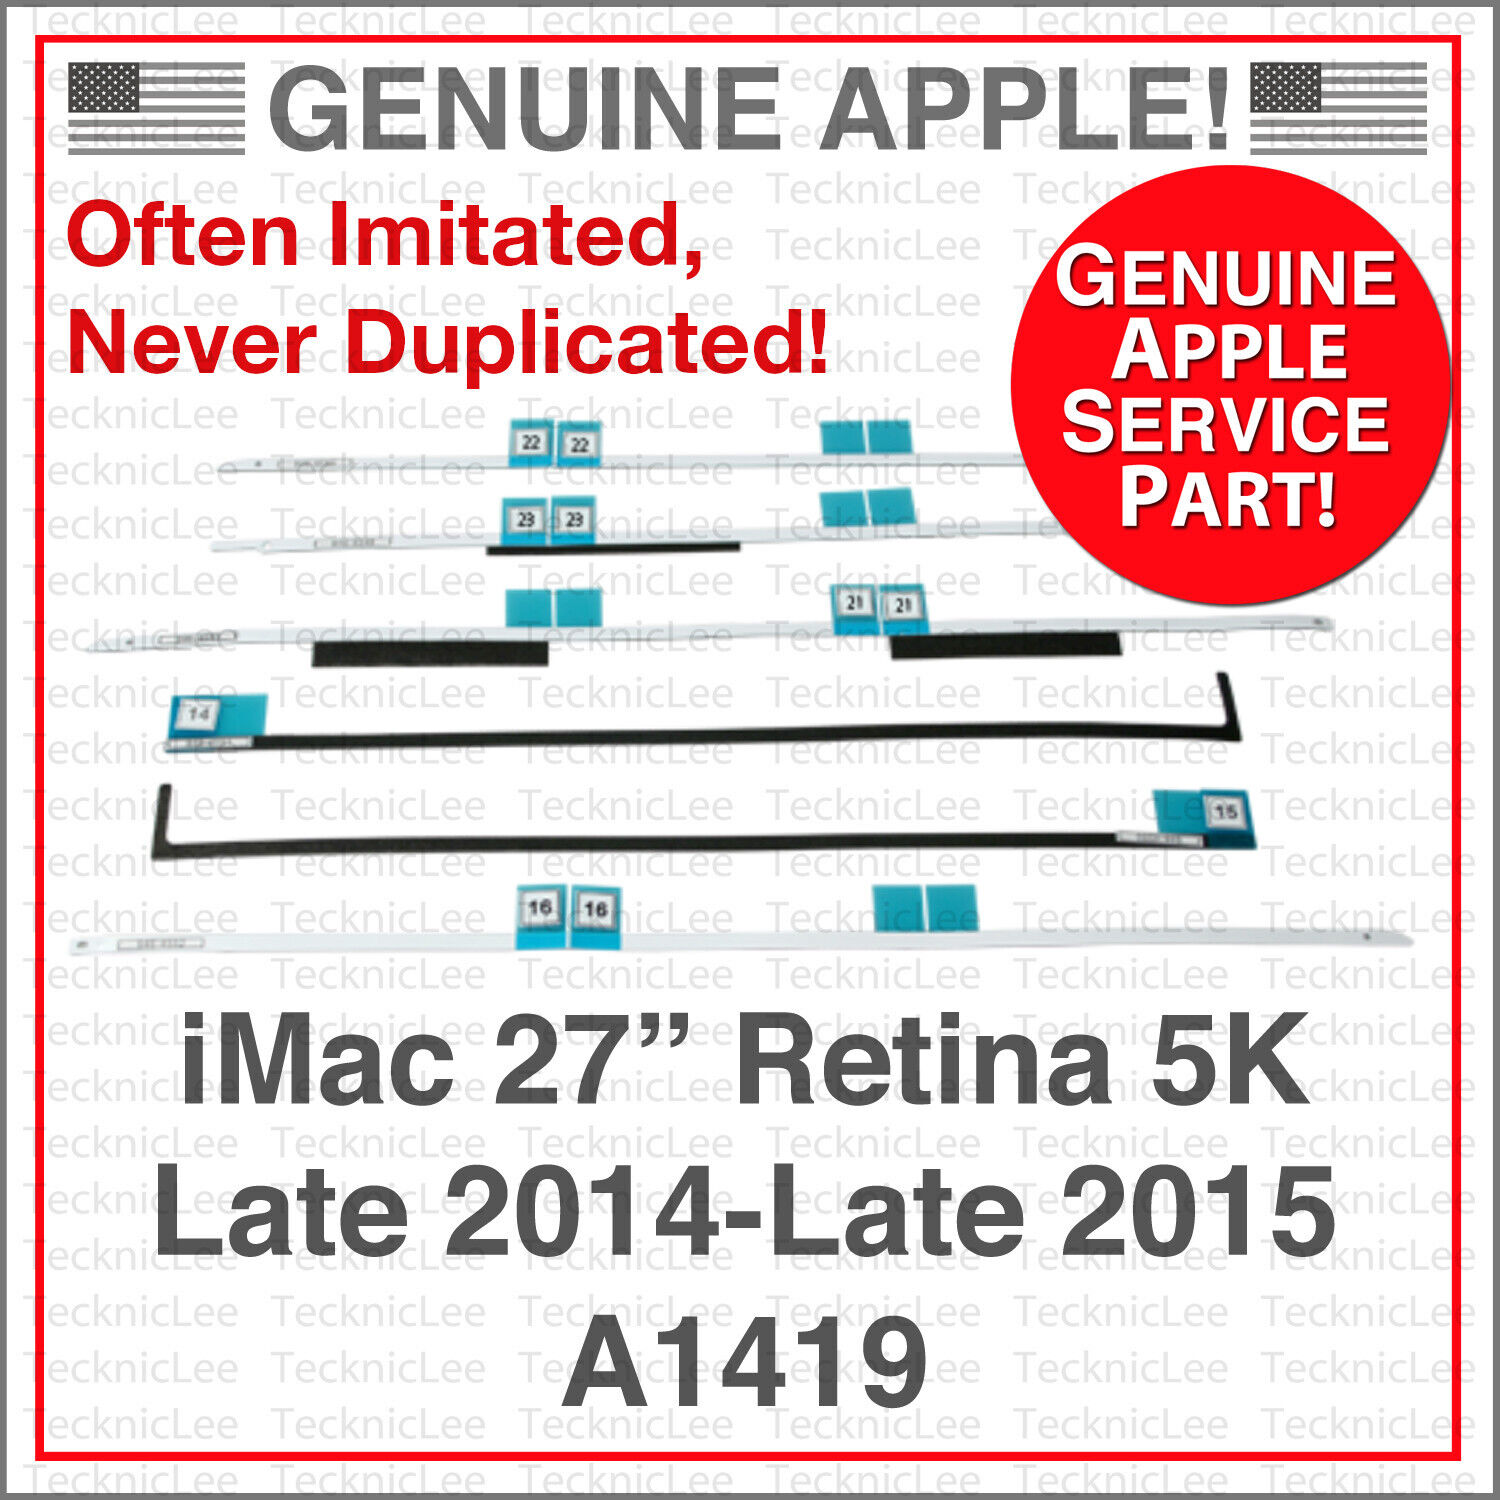 NEW Apple OEM 076-00009- Adhesive Repair Kit for iMac 27” Retina Late 2014-2015